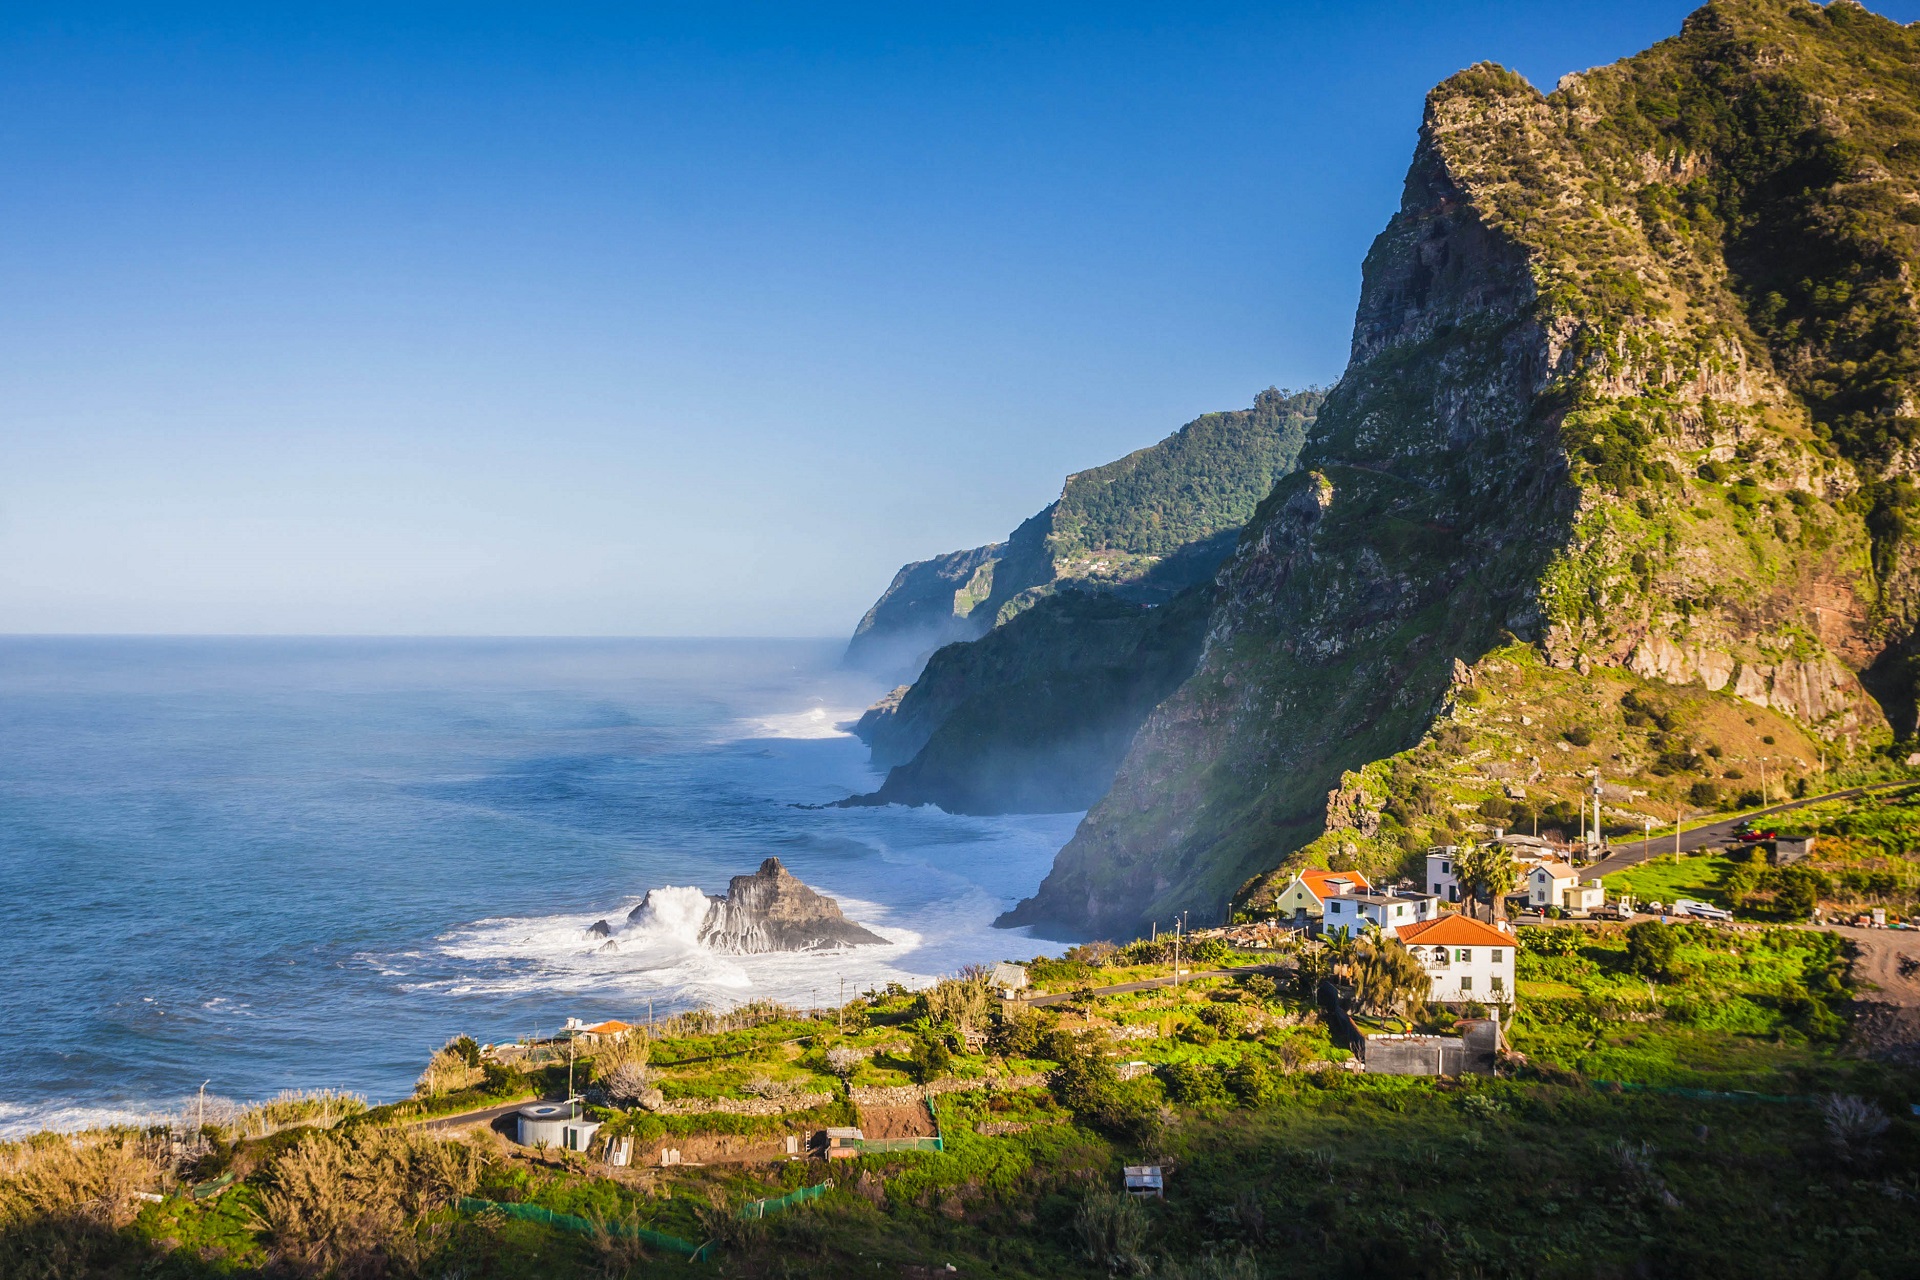 O saptamana in Madeira, insula primaverii eterne – 422 euro (zbor + cazare)